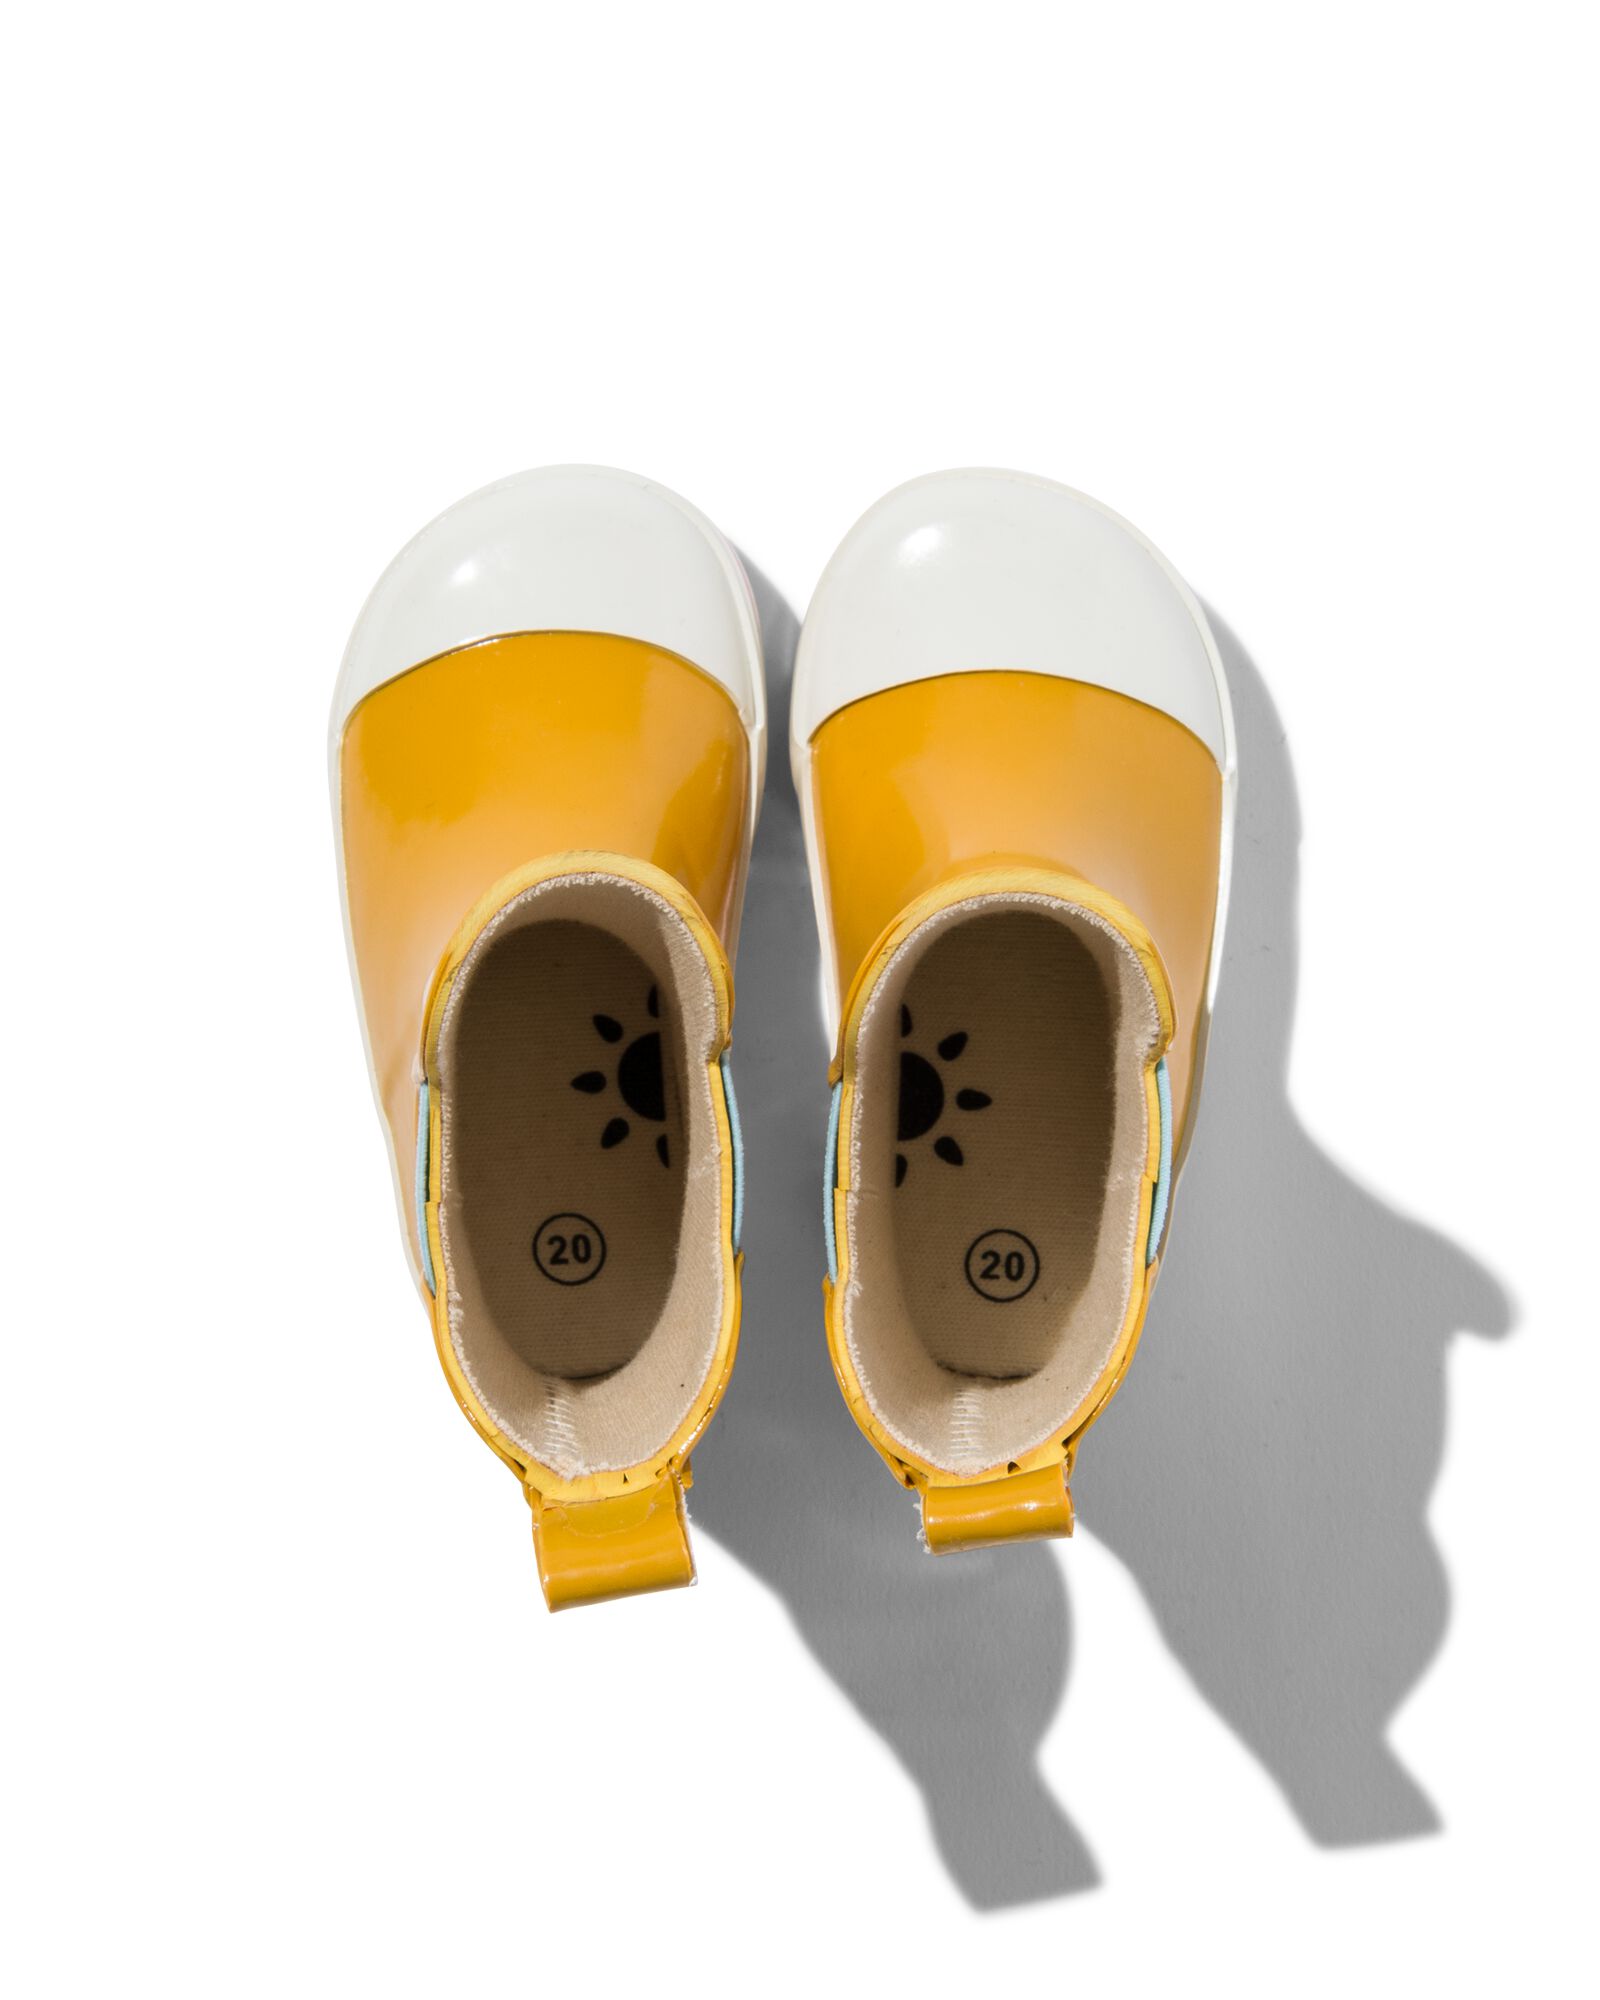 bottes de pluie enfant caoutchouc jaune - HEMA